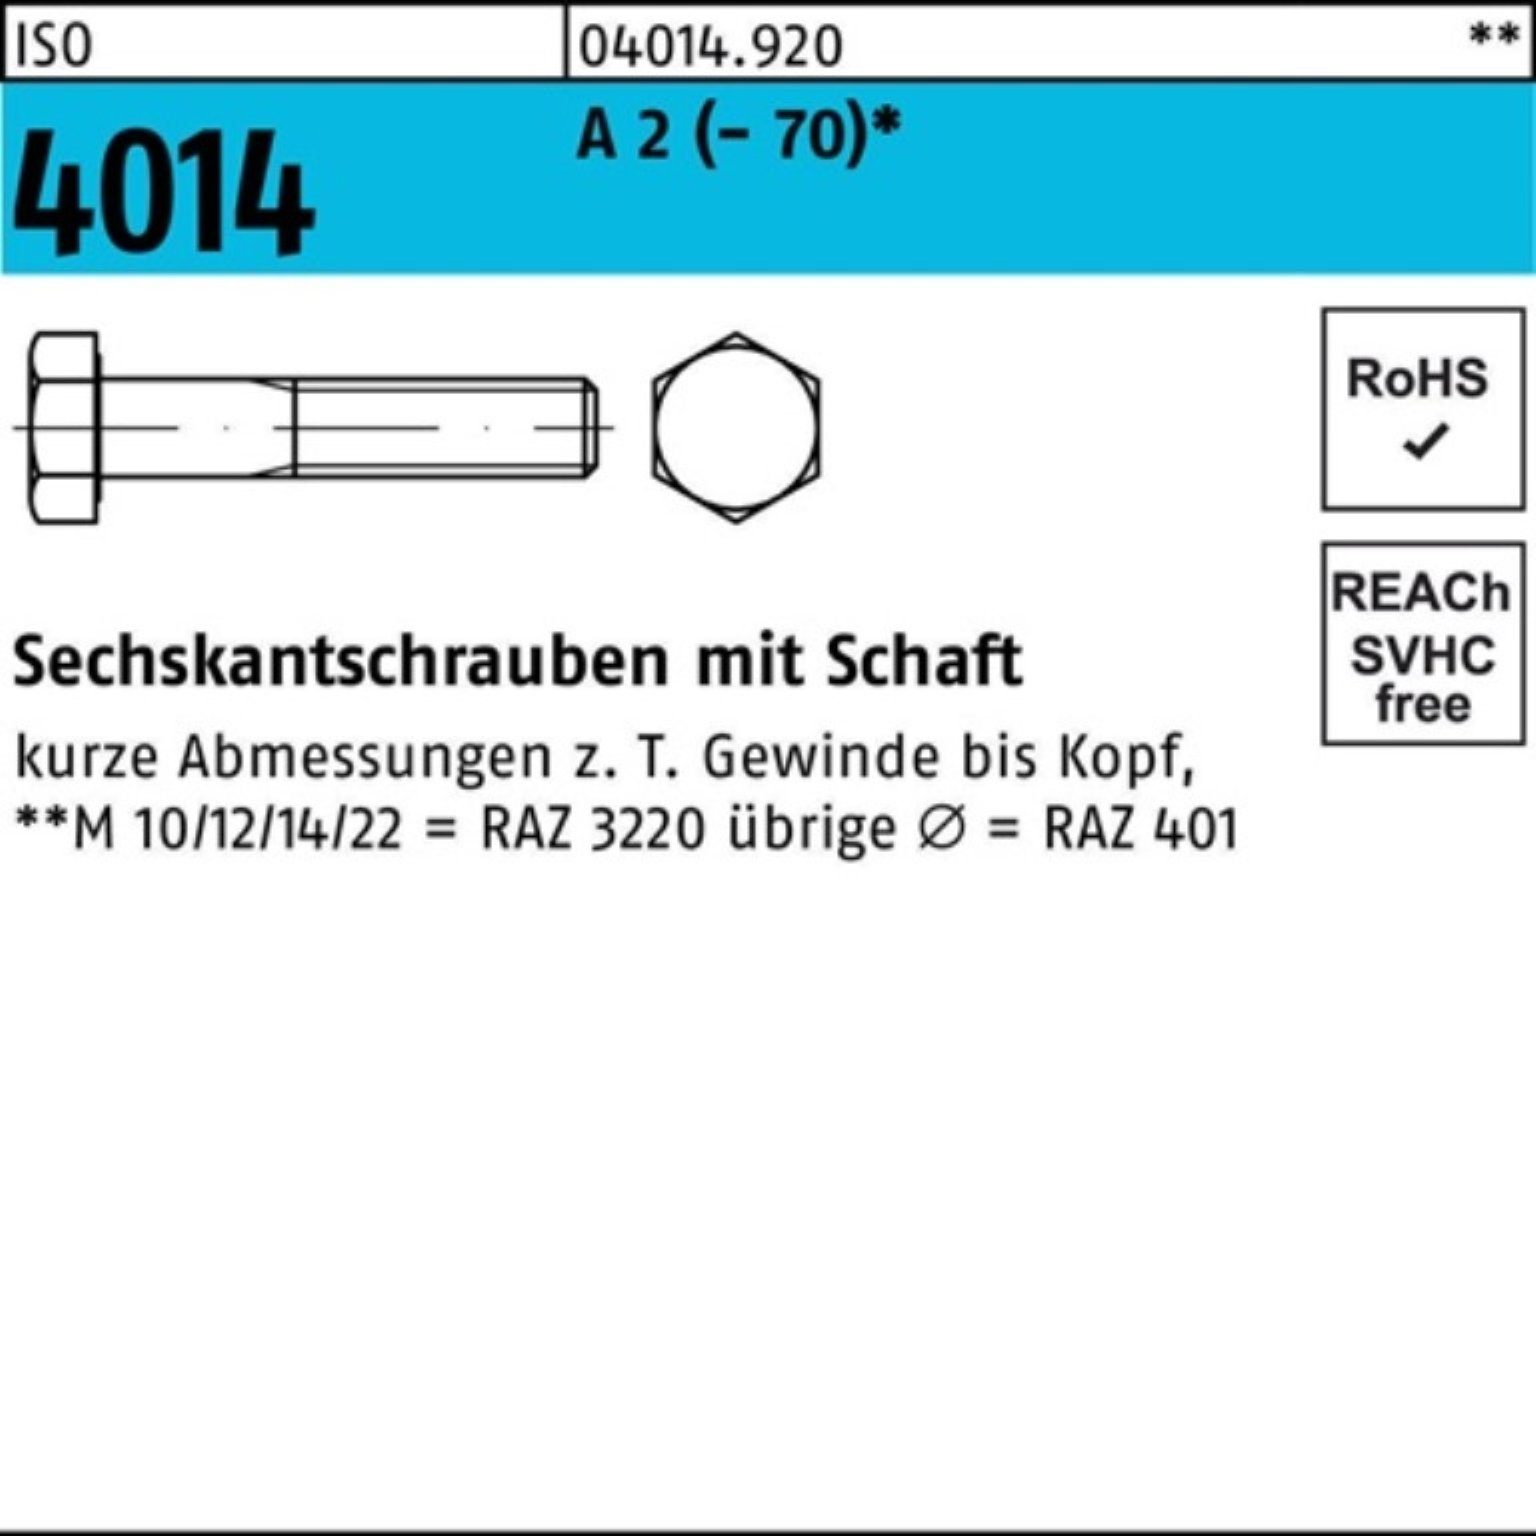 Bufab Sechskantschraube 100er Pack Sechskantschraube A (70) St ISO 2 Schaft 250 1 4014 M12x